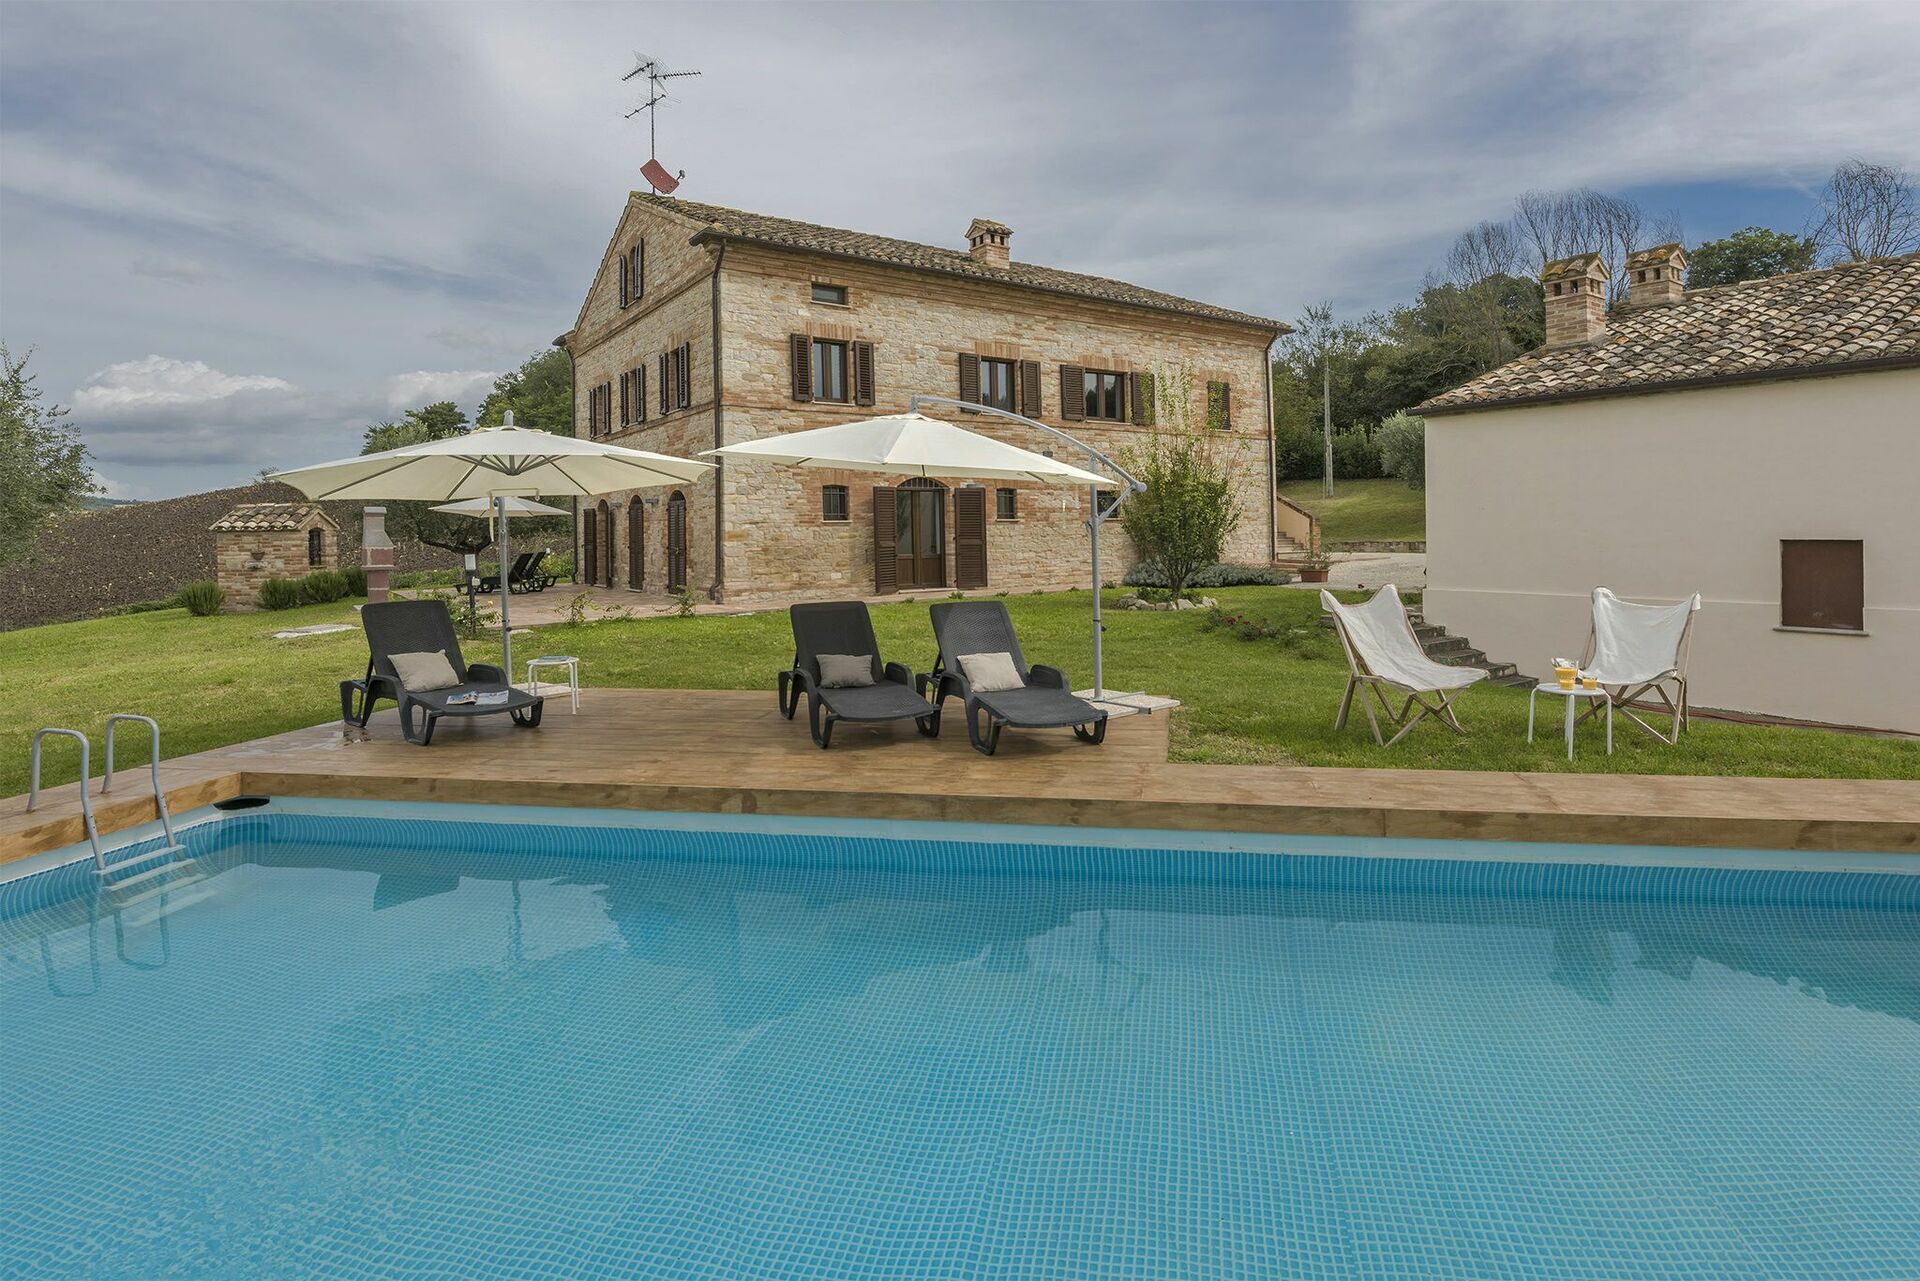 458_b3348ad_Villa Loreta, met prive zwembad, jacuzzi, voor groep in Zuid Le Marche (11)